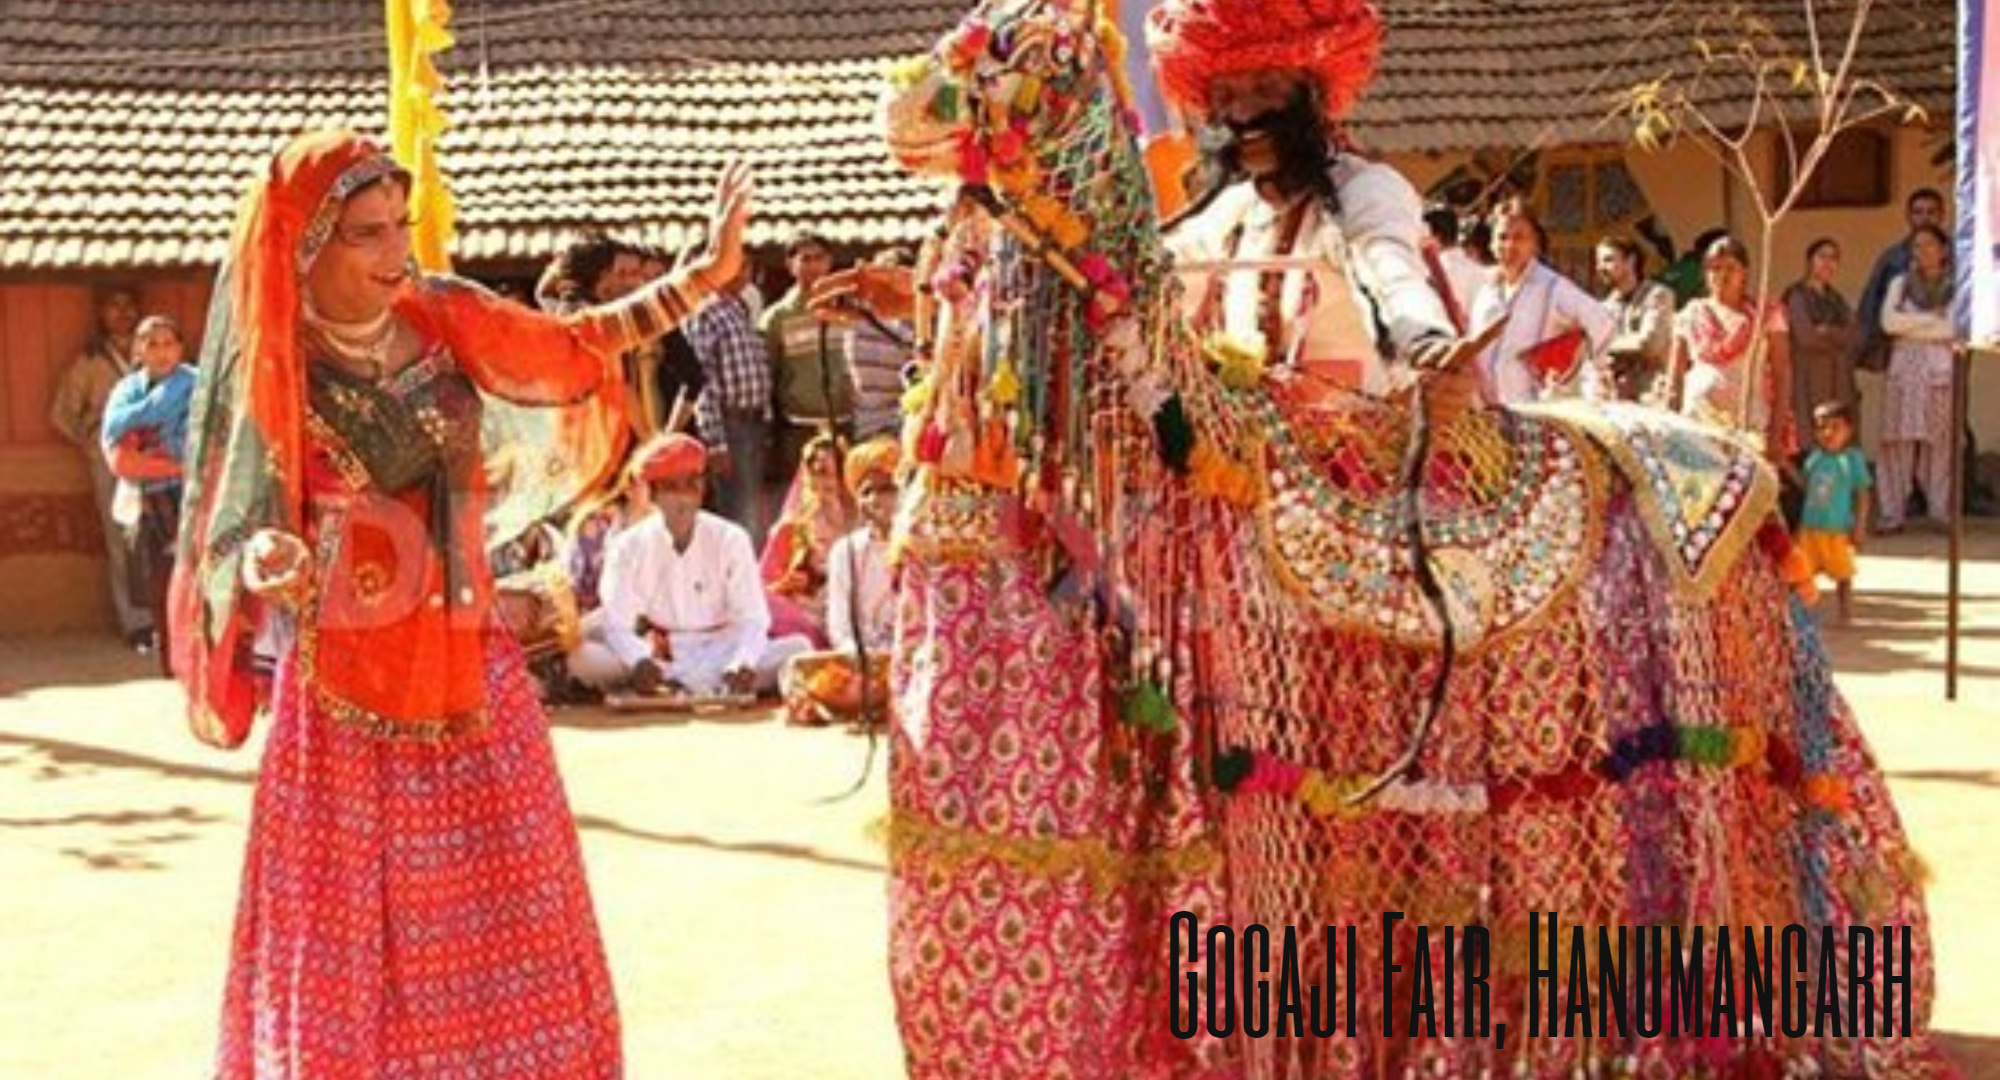 gogaji fair hanumangarh, gogaji fair